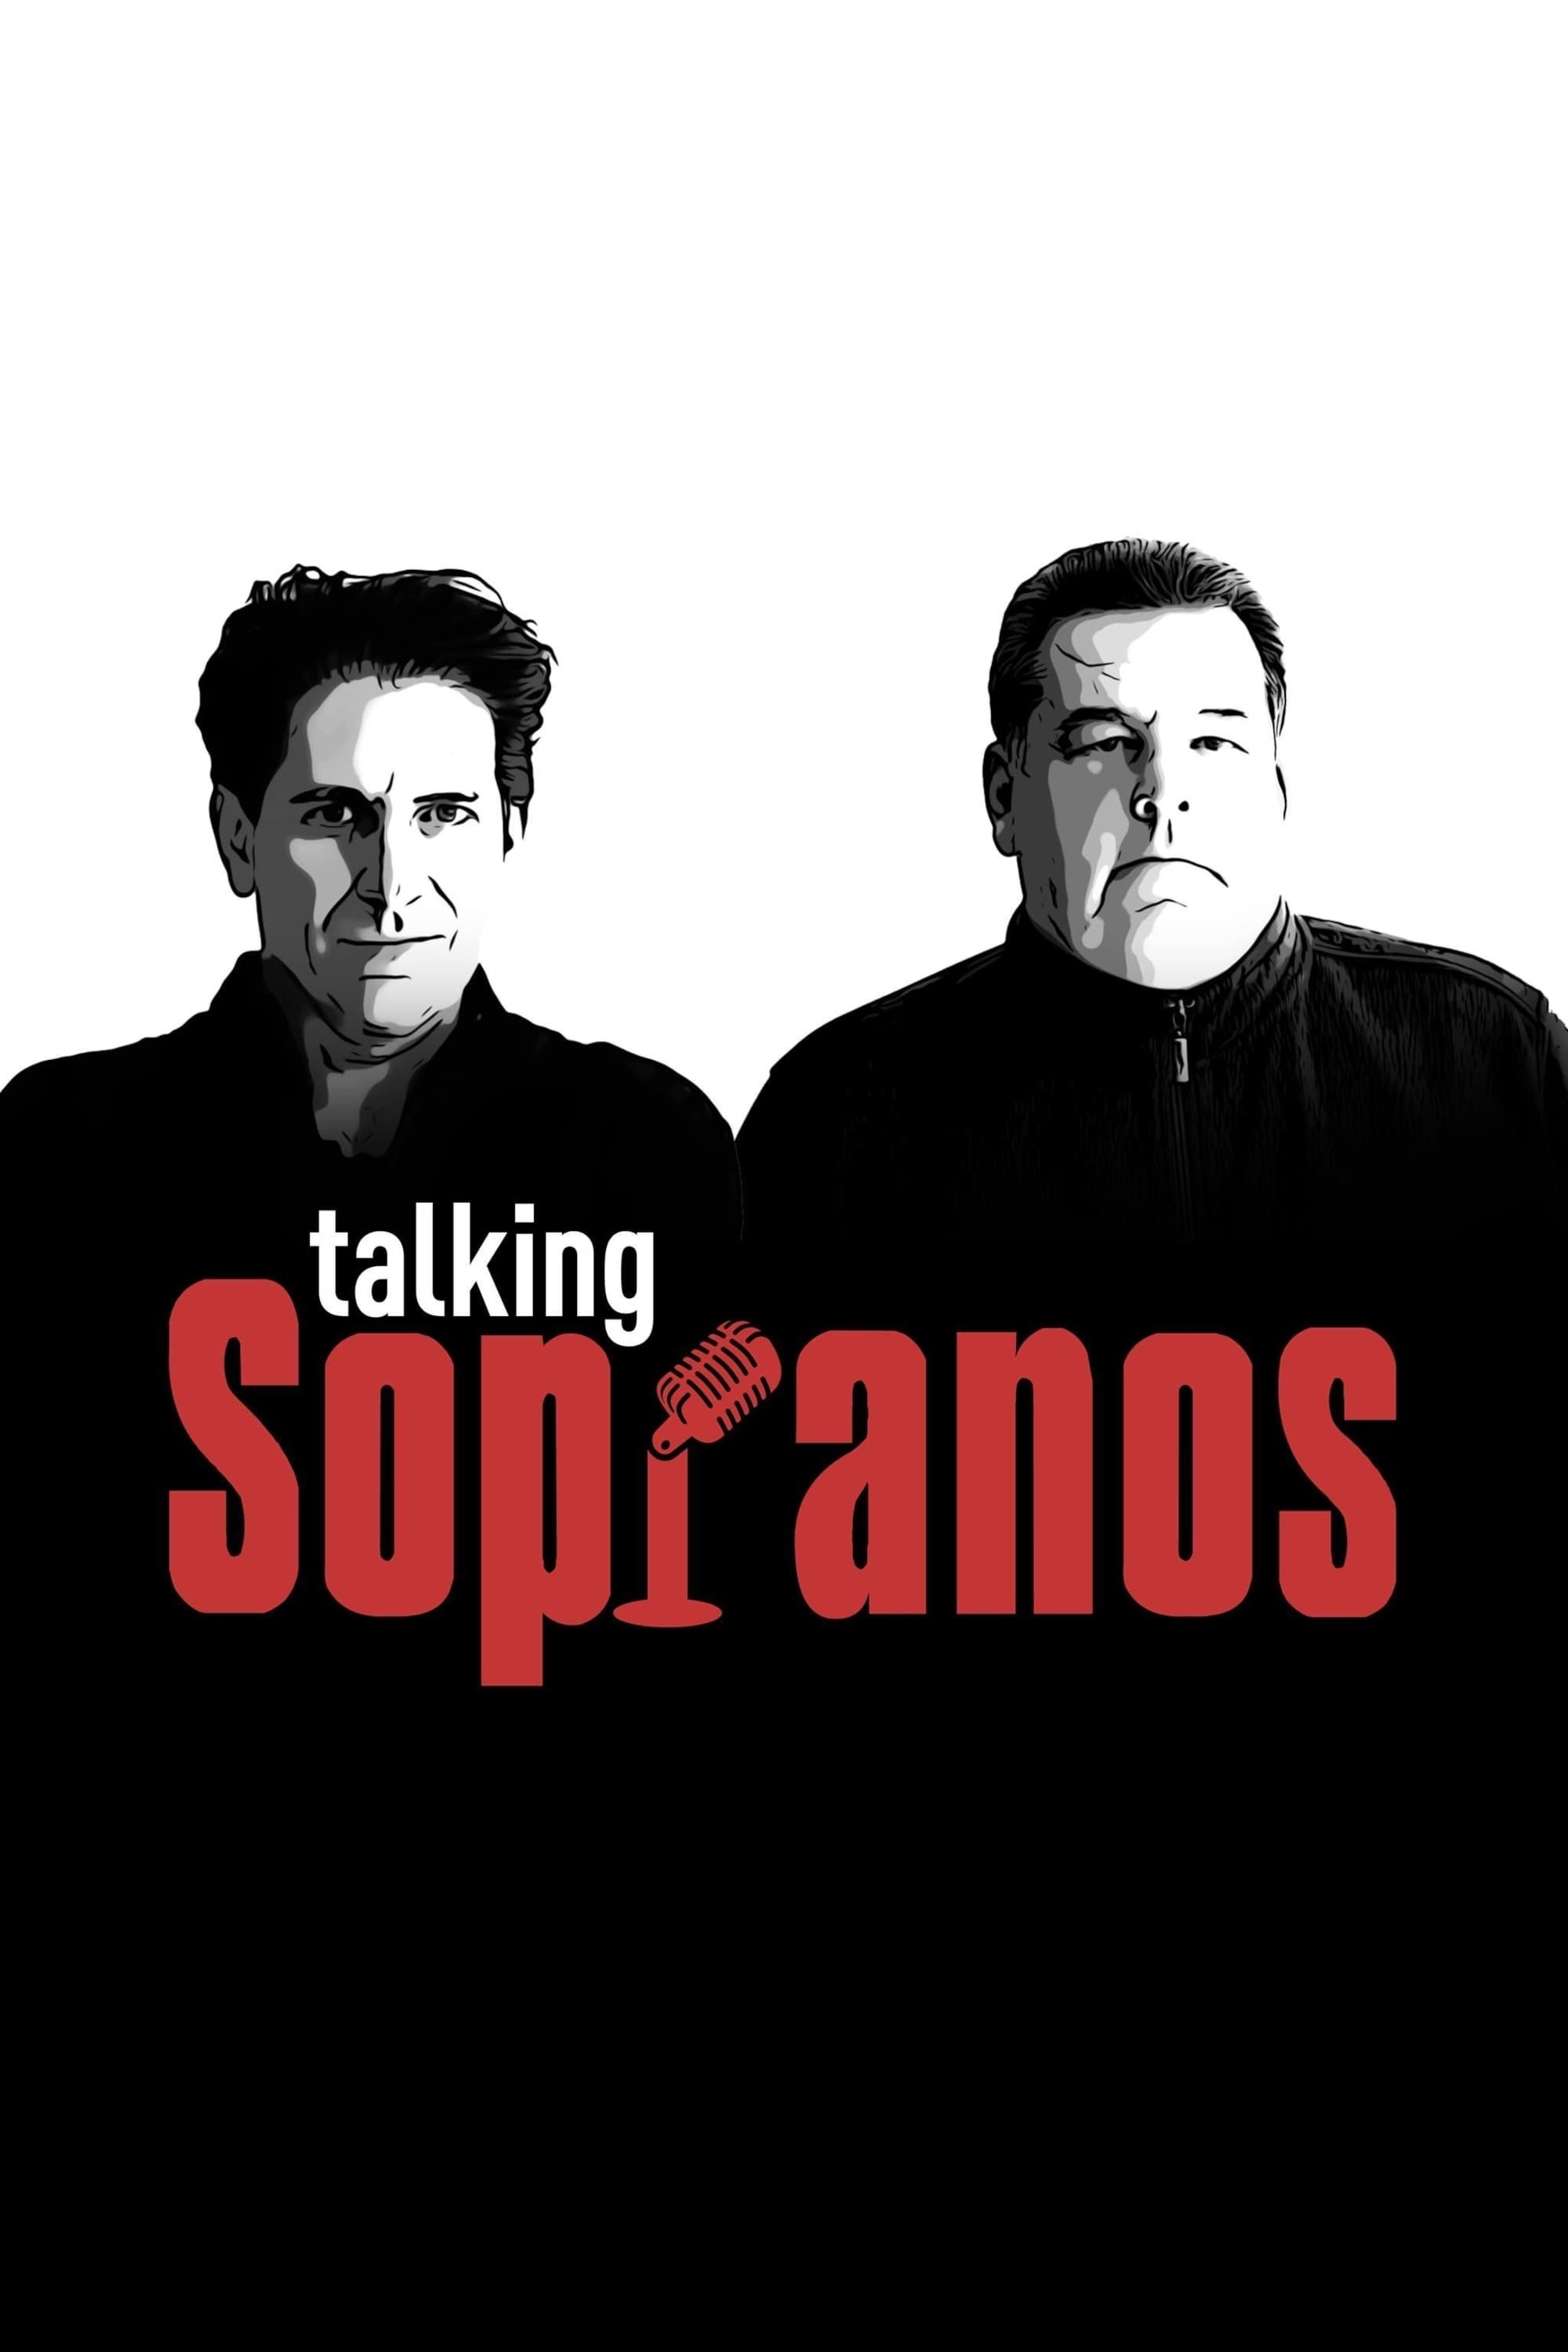 Talking Sopranos